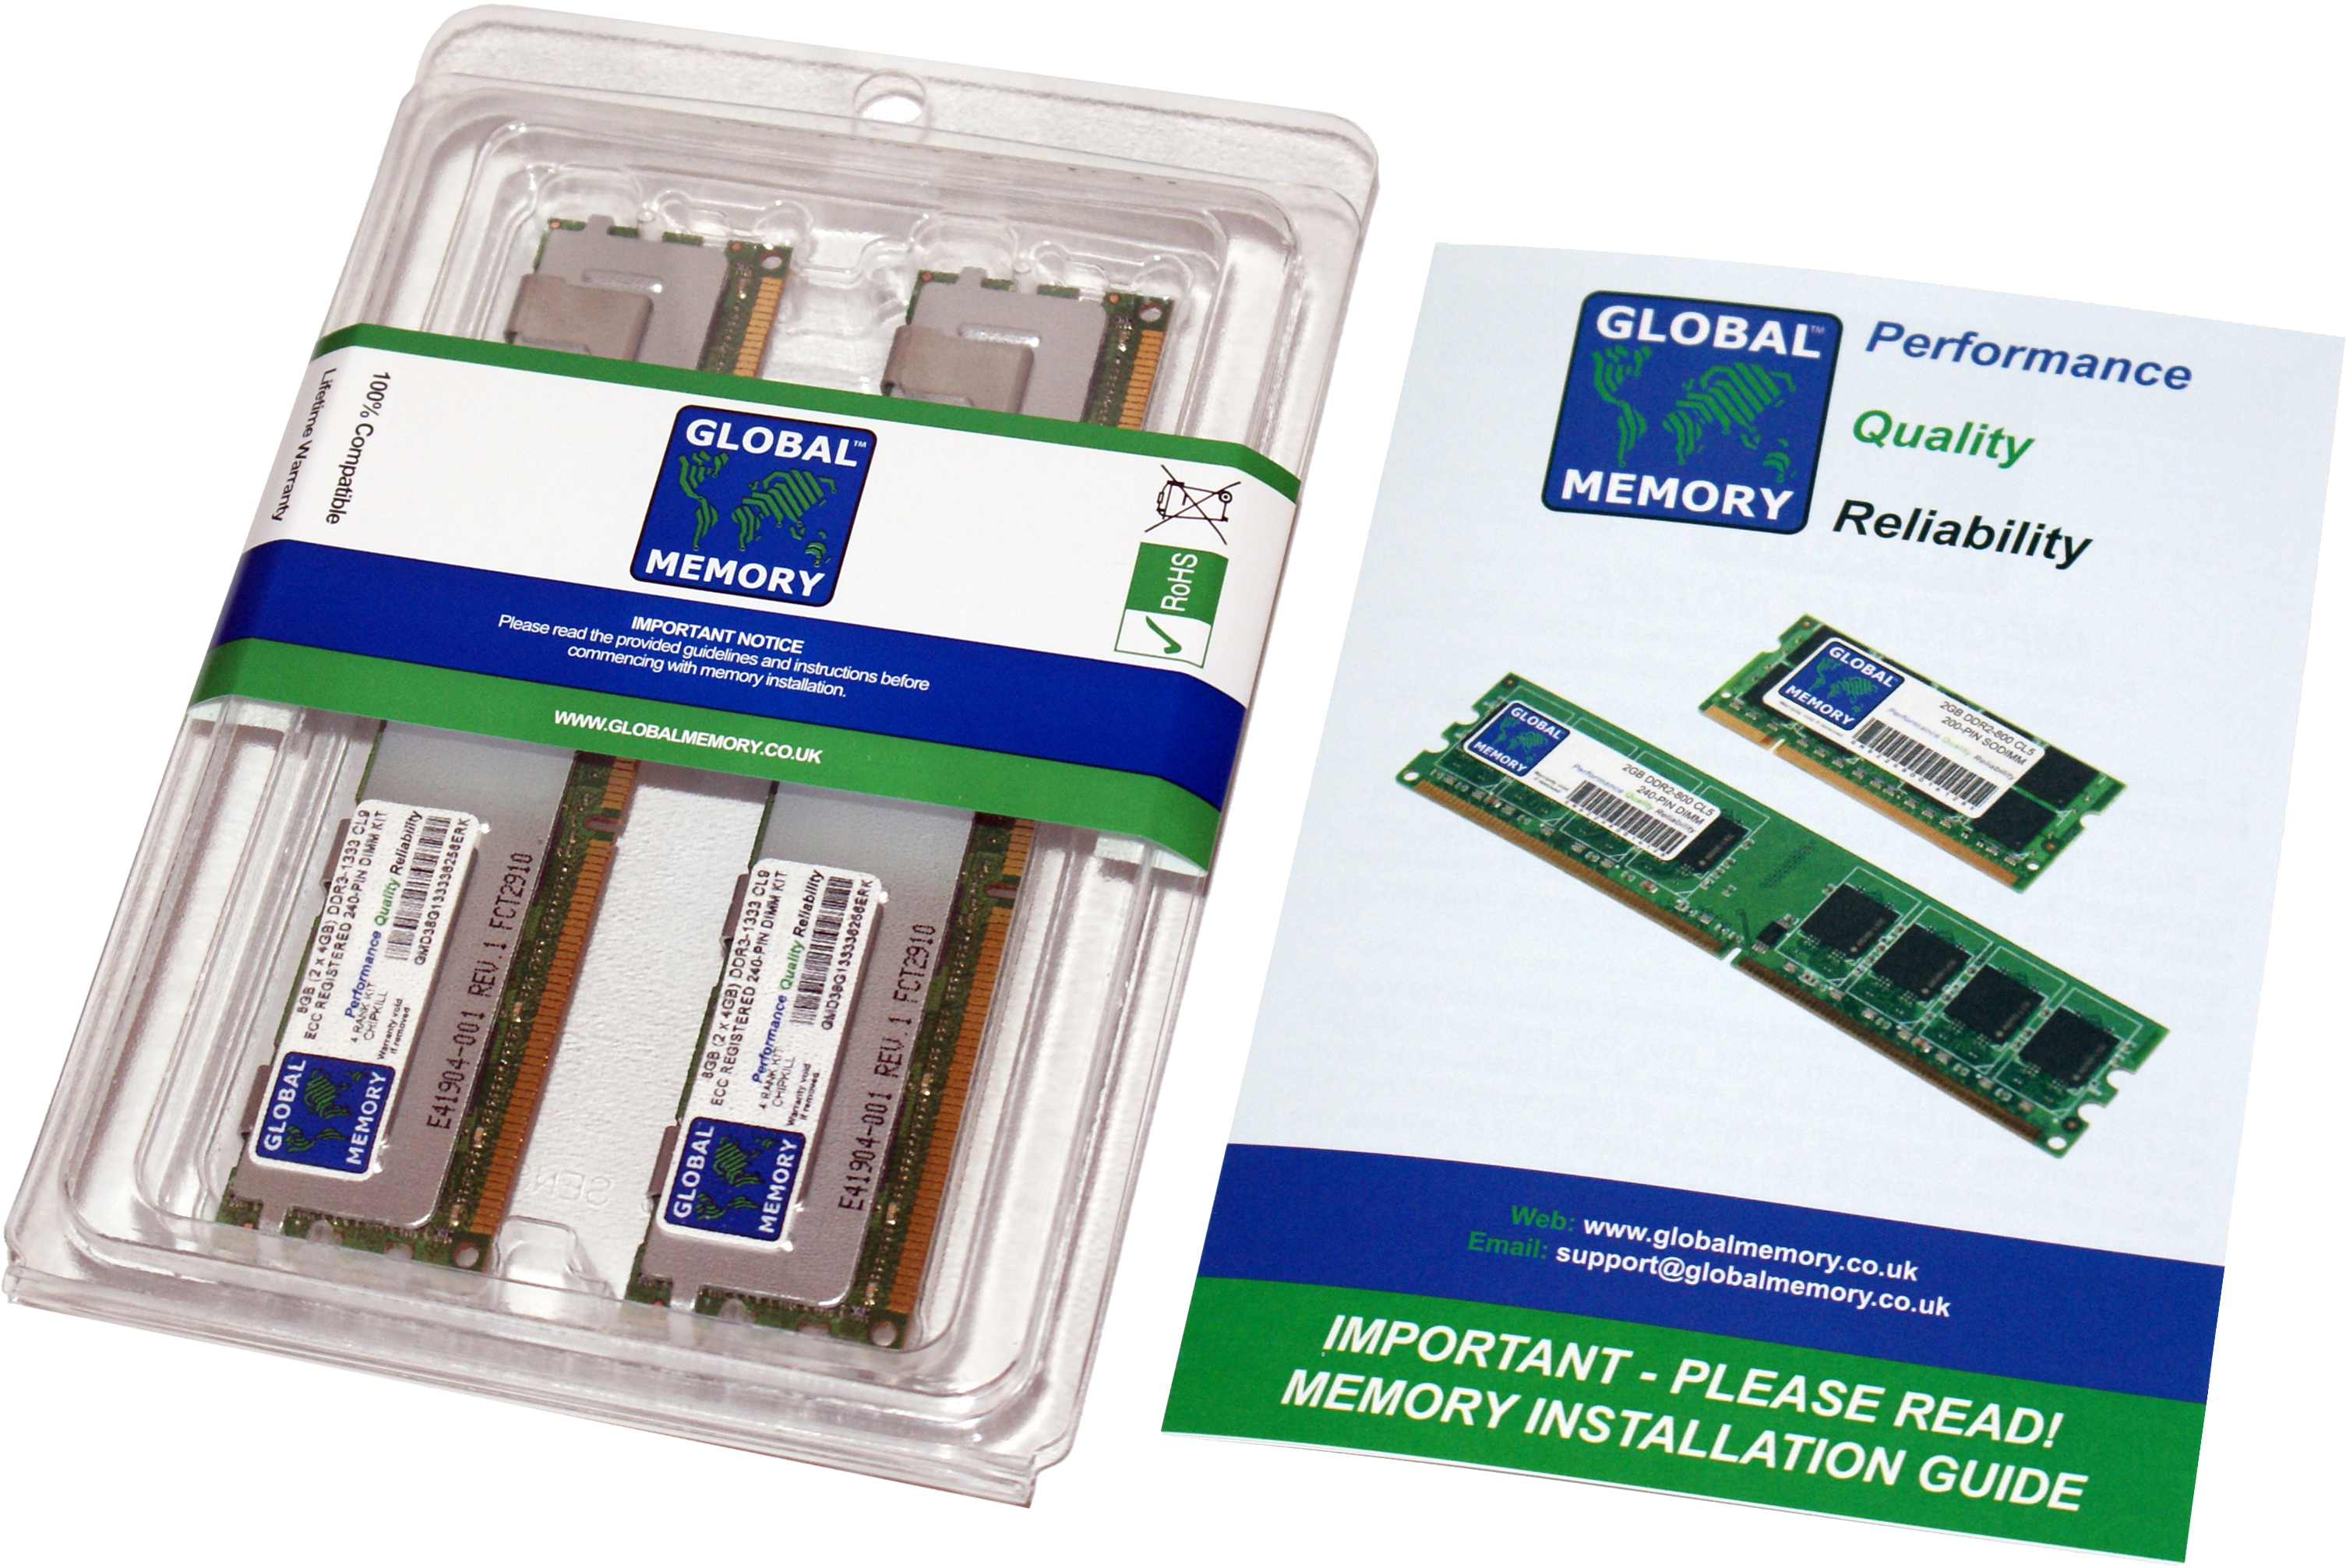 32GB (2 x 16GB) DDR3 1066/1333MHz 240-PIN ECC REGISTERED DIMM (RDIMM) MEMORY RAM KIT FOR HEWLETT-PACKARD SERVERS/WORKSTATIONS (8 RANK KIT NON-CHIPKILL)